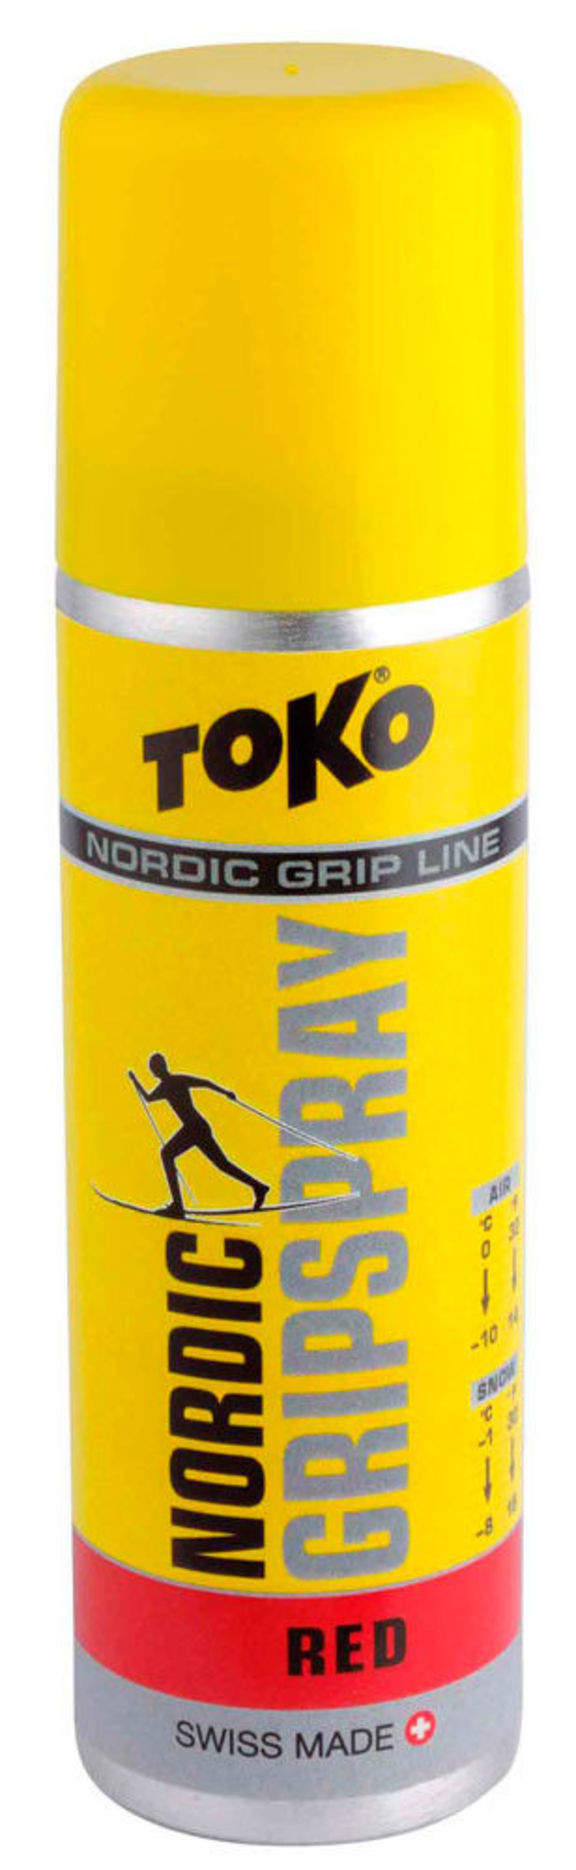 Воск Toko Nordlic Grip Spray red 70ml